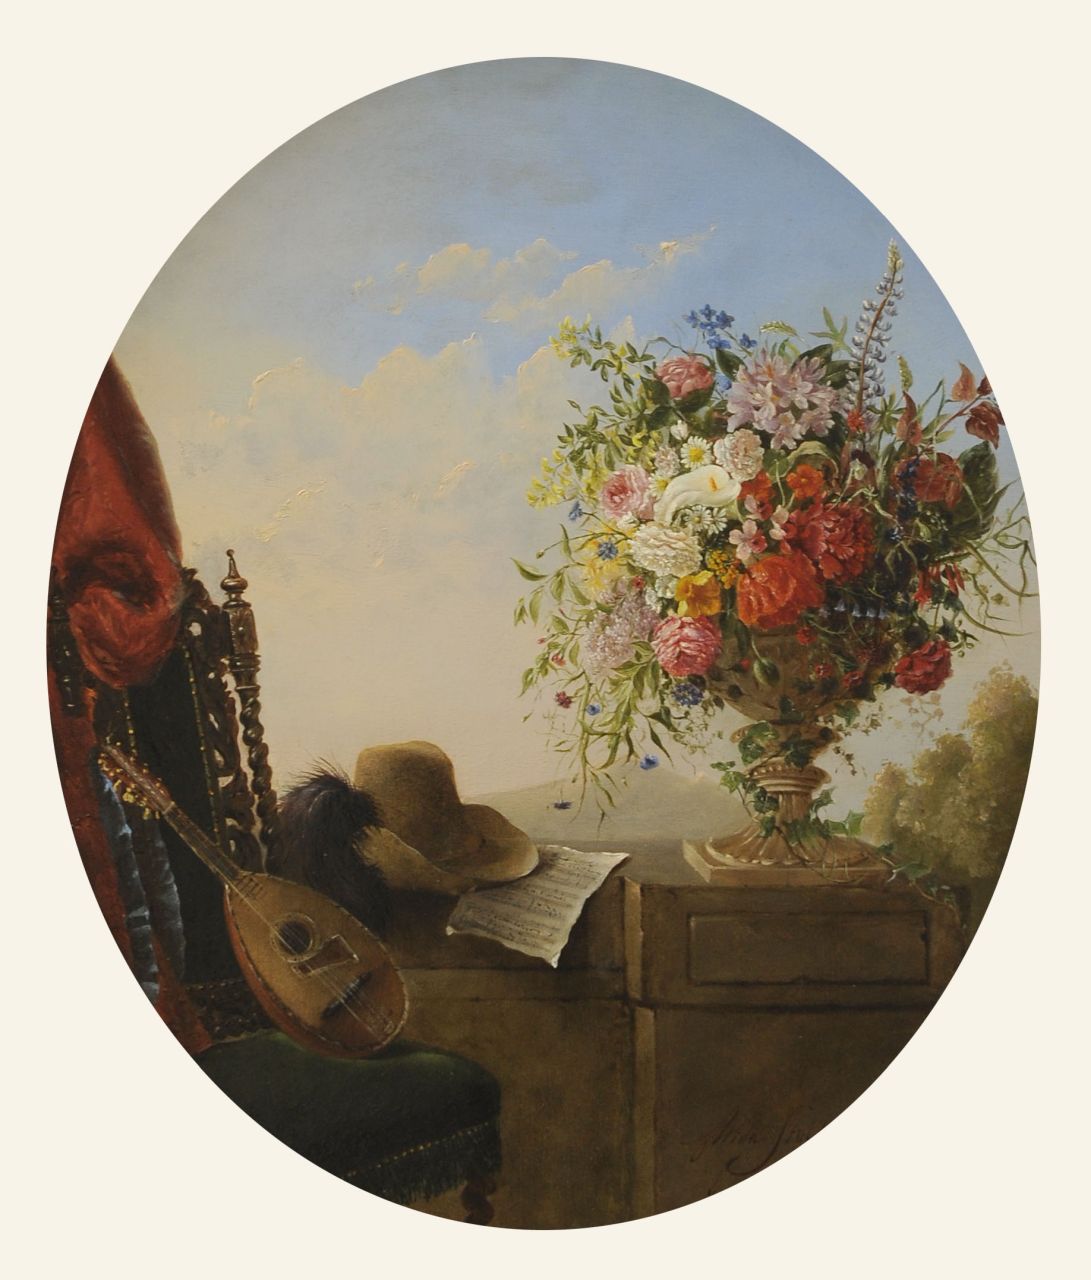 Stolk A.E. van | 'Alida' Elisabeth van Stolk | Schilderijen te koop aangeboden | Stilleven met pronkboeket, hoed en mandoline, olieverf op paneel 51,0 x 42,0 cm, gesigneerd rechtsonder en gedateerd 1853